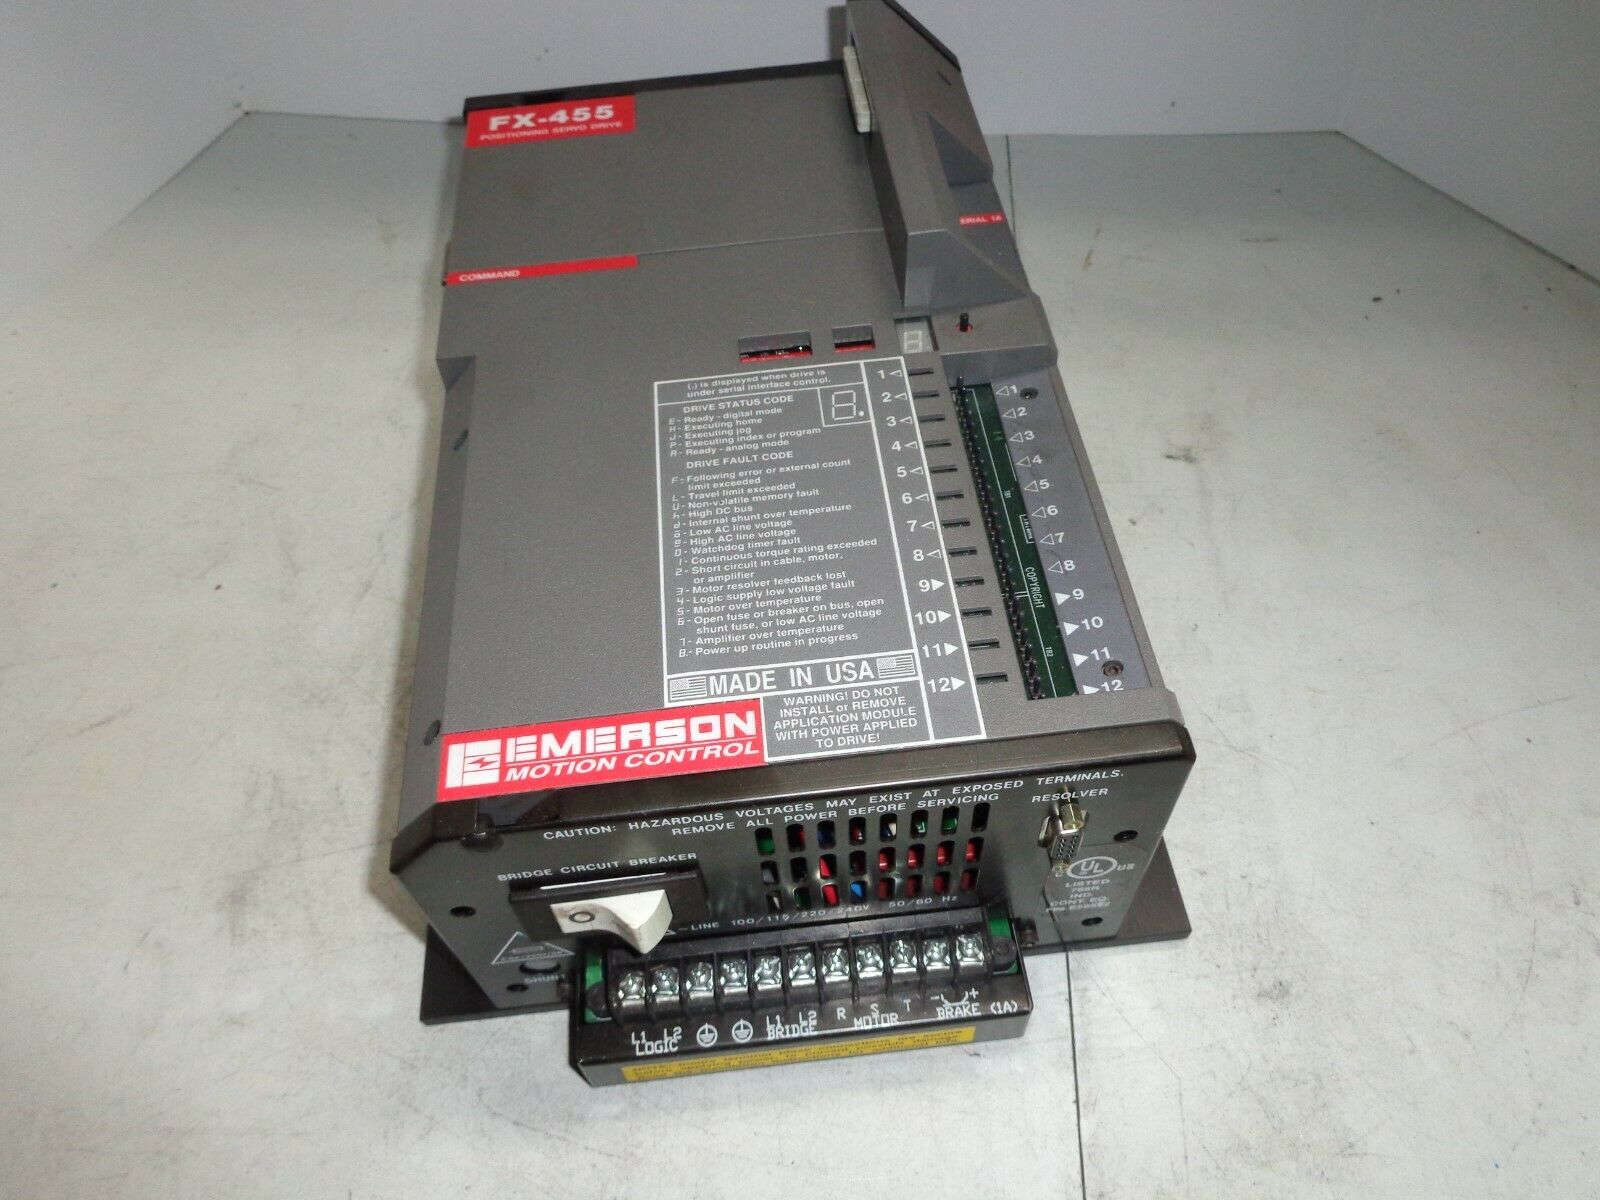 艾默生 fx-455 定位伺服驱动控制器 960134-01 新.